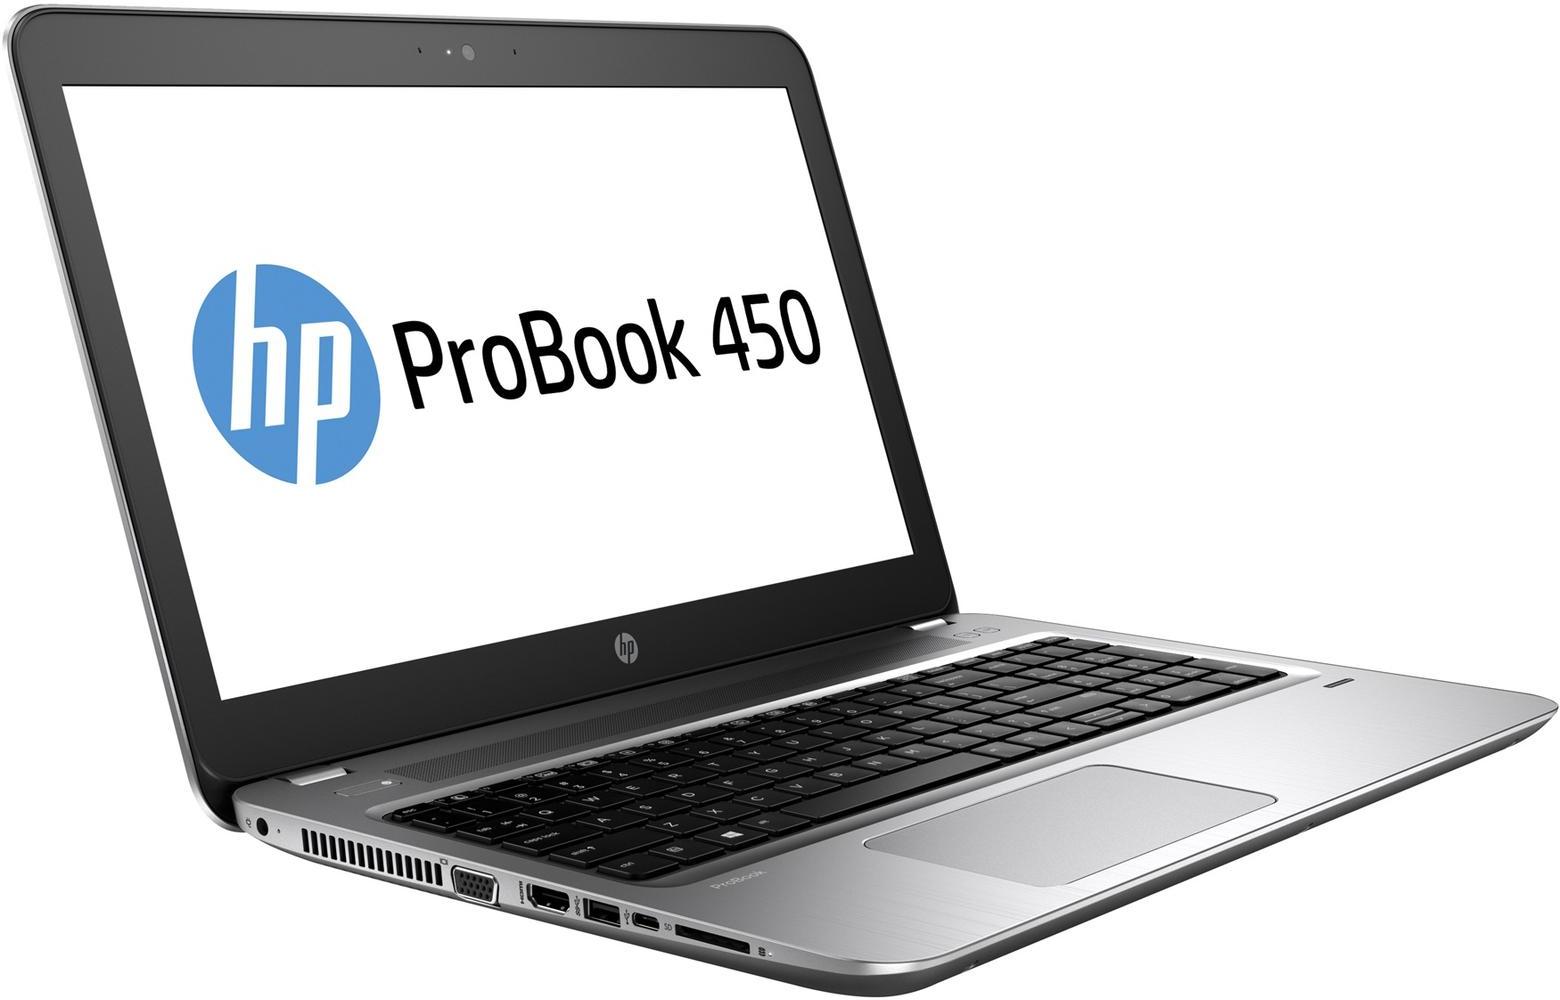   HP Probook 450 G4 (Y7Z98EA)  1